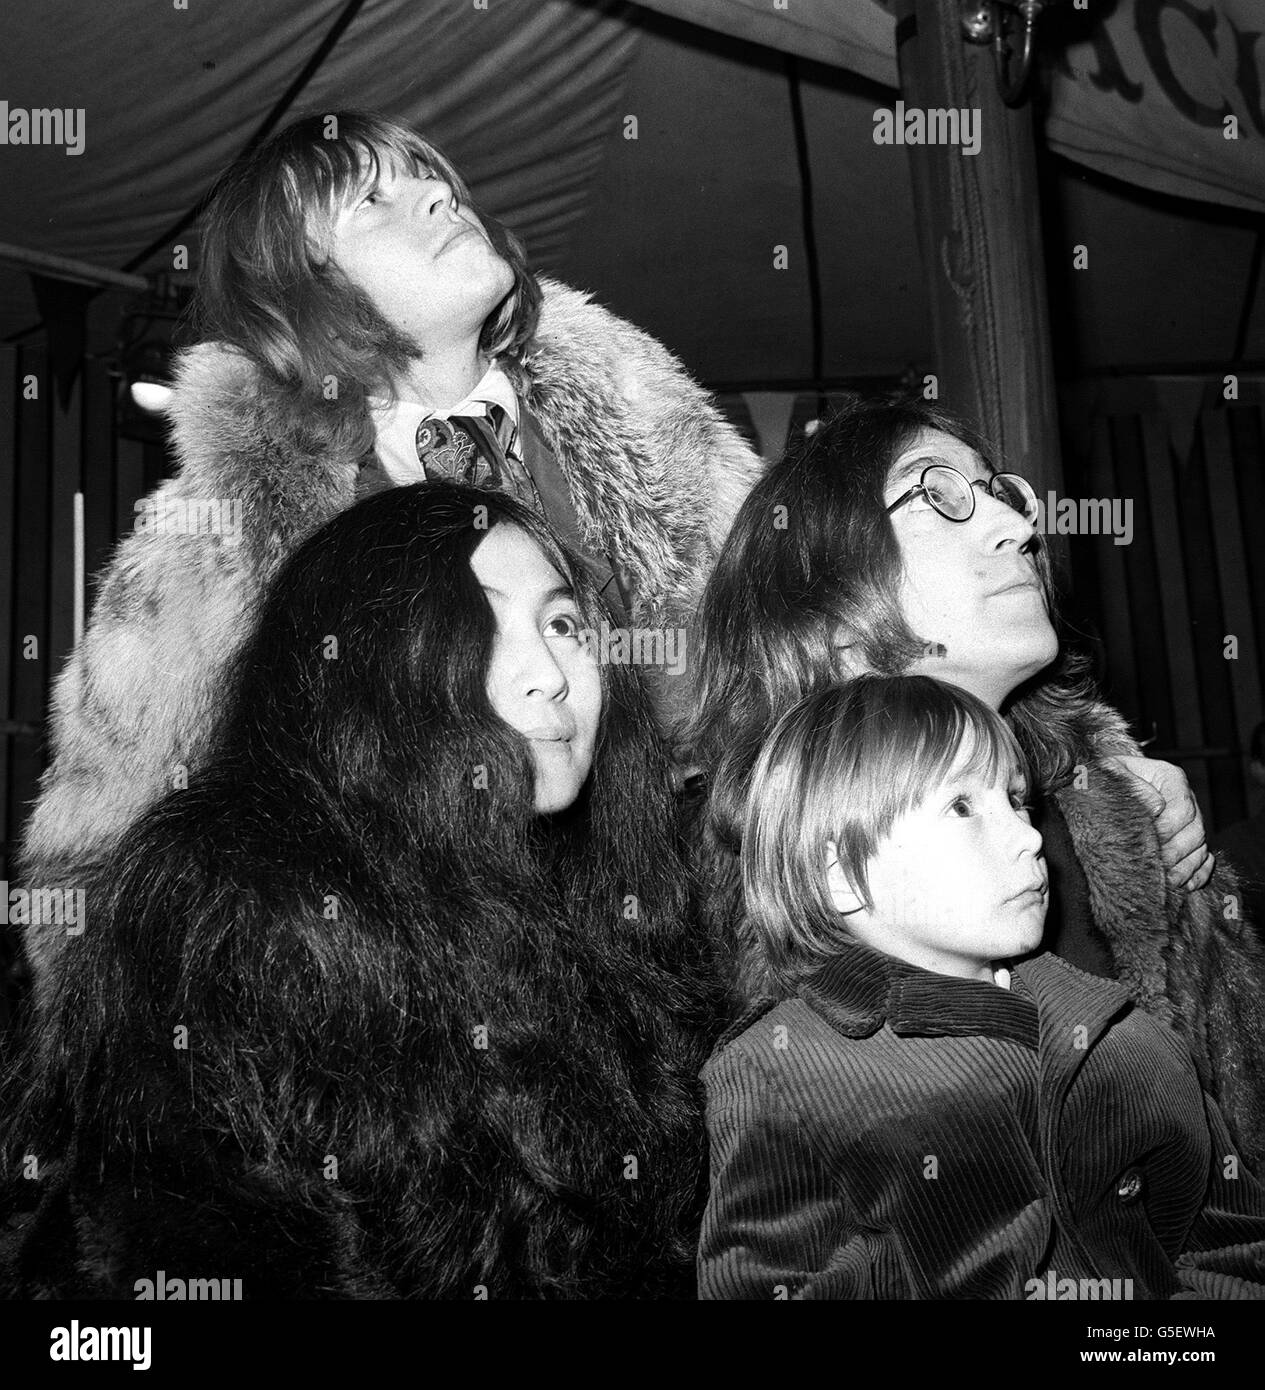 Julian Lennon (davanti) con suo padre John Lennon (a destra) dei Beatles, l'attrice giapponese Yoko Ono (a sinistra) e Brian Jones dei Rolling Stones (indietro) in una prova del Rolling Stones' Rock and Roll Circus all'Intertel Studio di Wembley, Londra. CELEBRITÀ Foto Stock